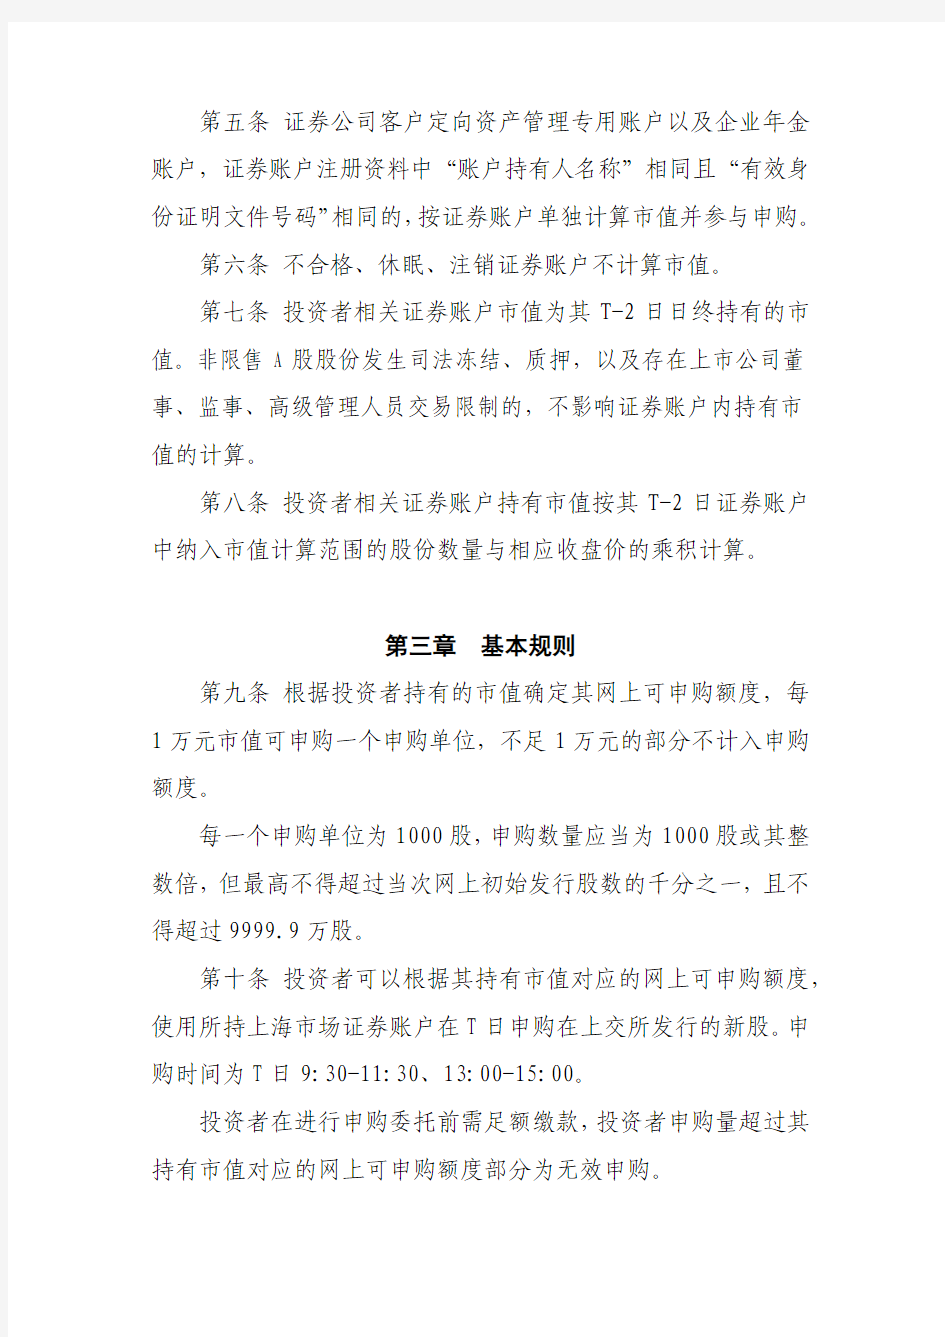 上海市场首次公开发行股票网上按市值申购实施办法